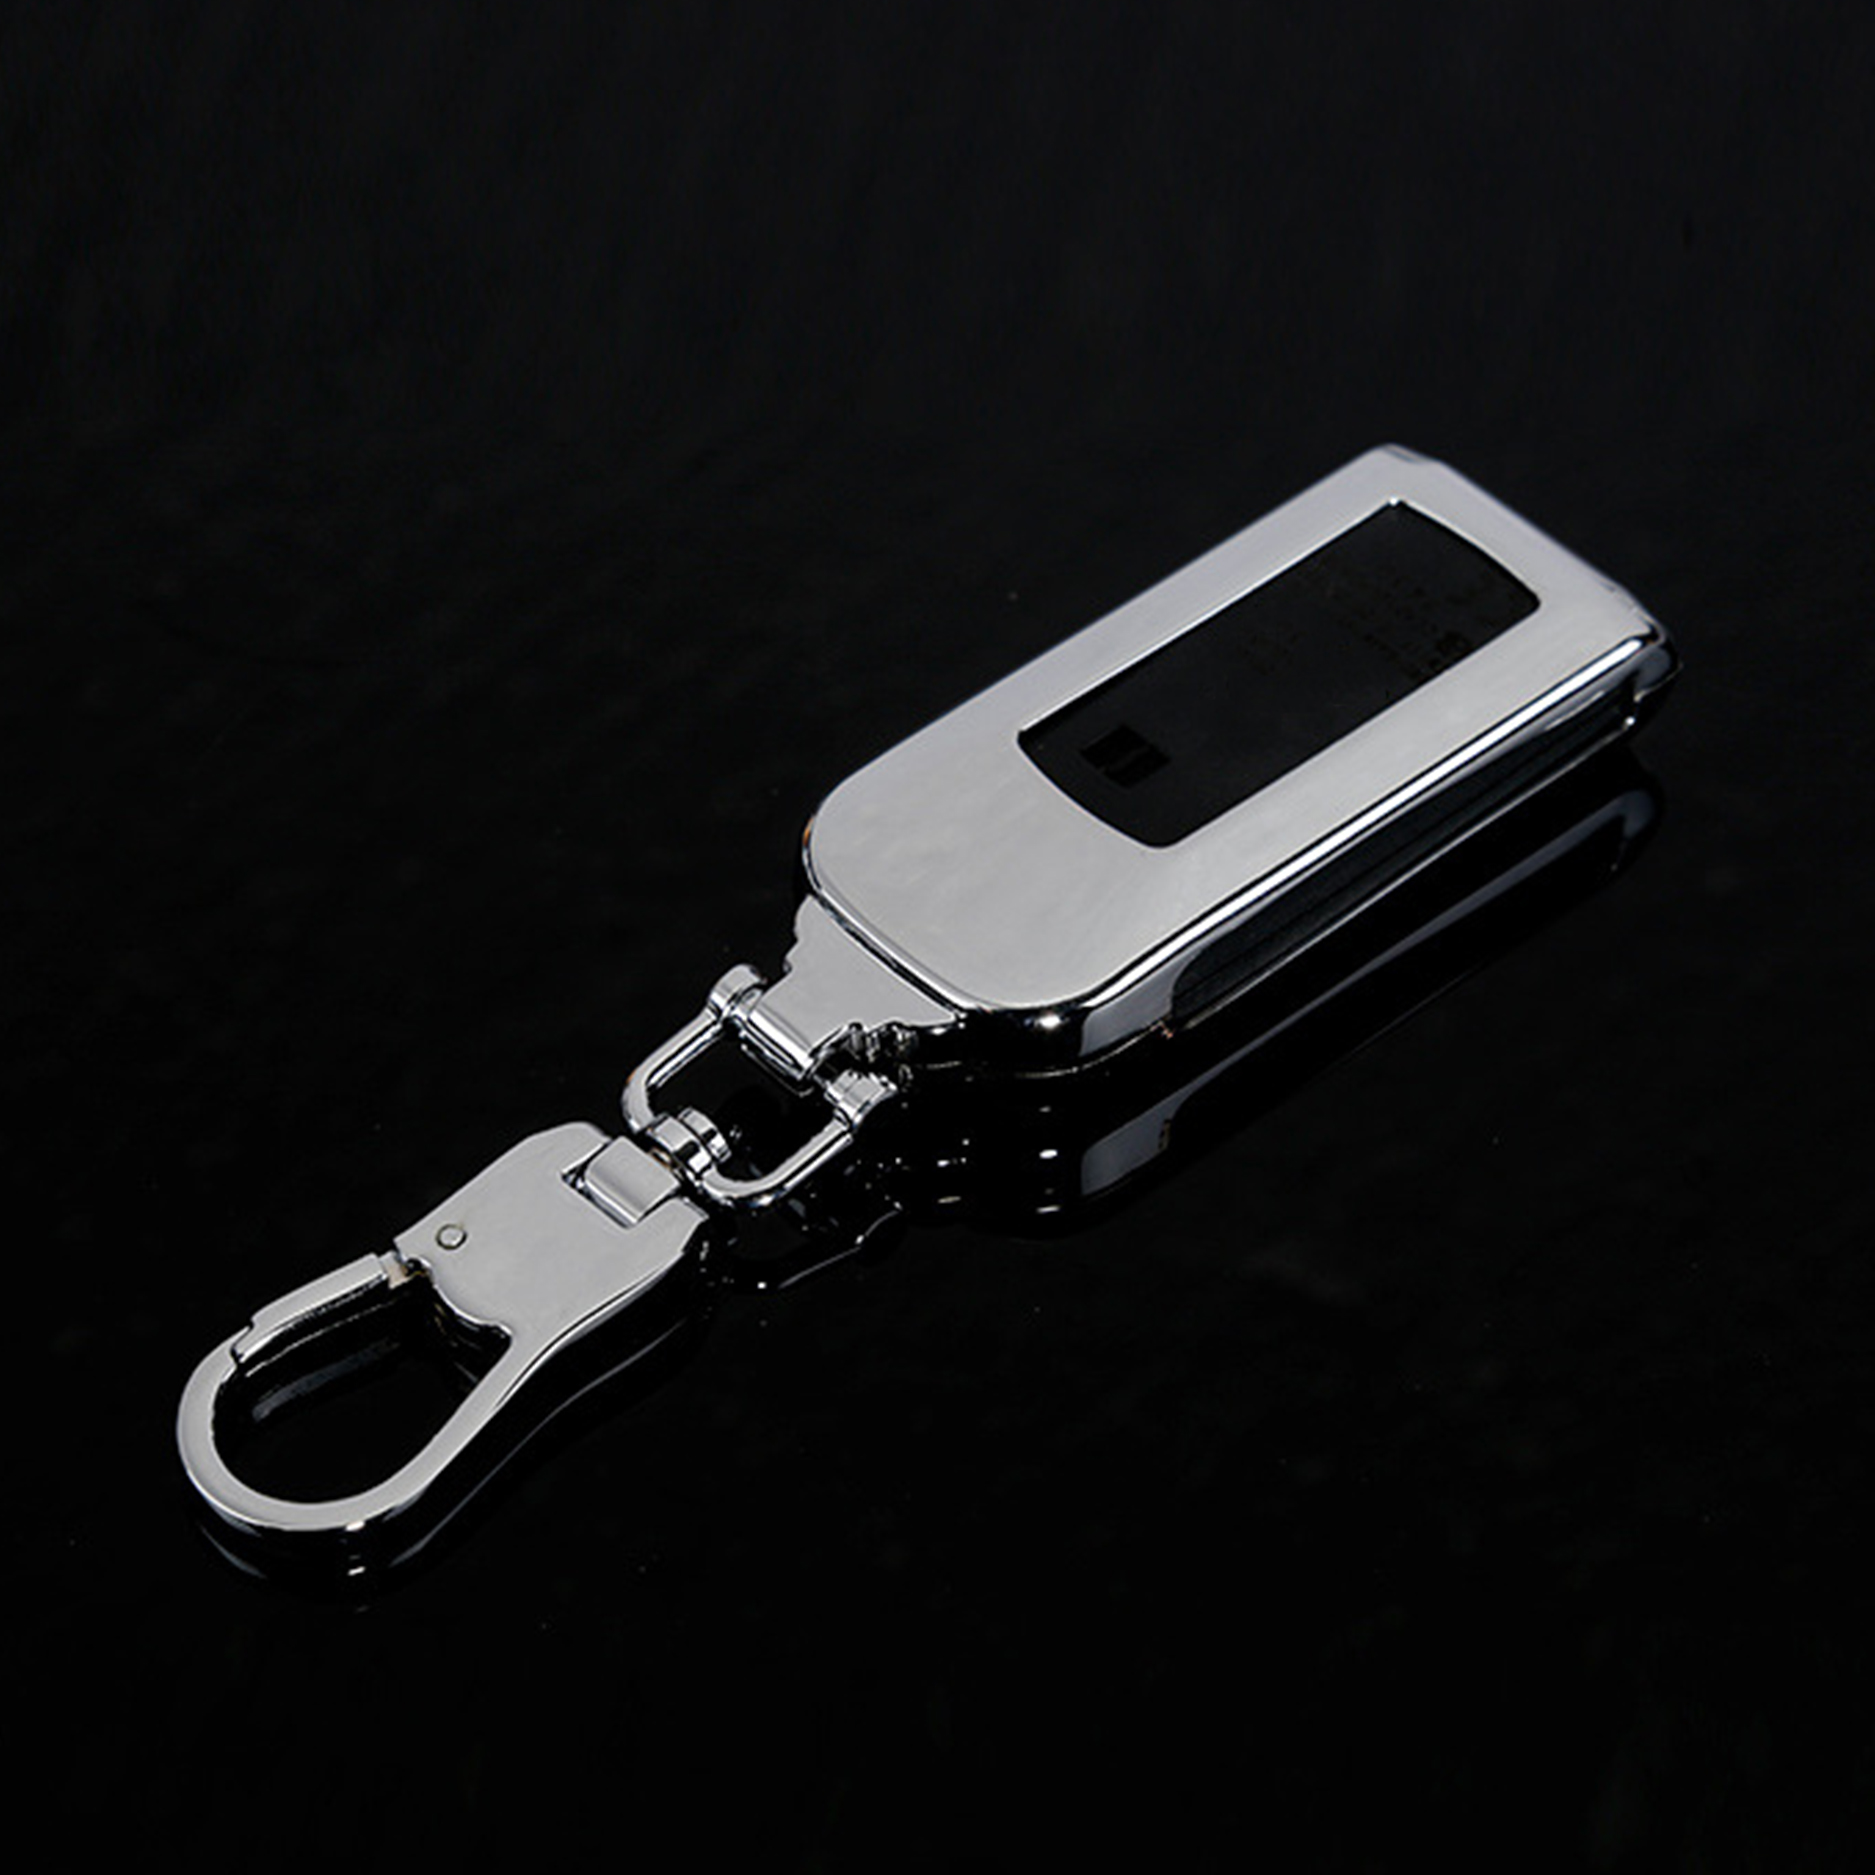 Ốp chìa khóa mitsubishi, chất liệu metal cao cấp, bảo vệ smartkey tuyệt đối, kiểu dáng sang trọng và hiện đại